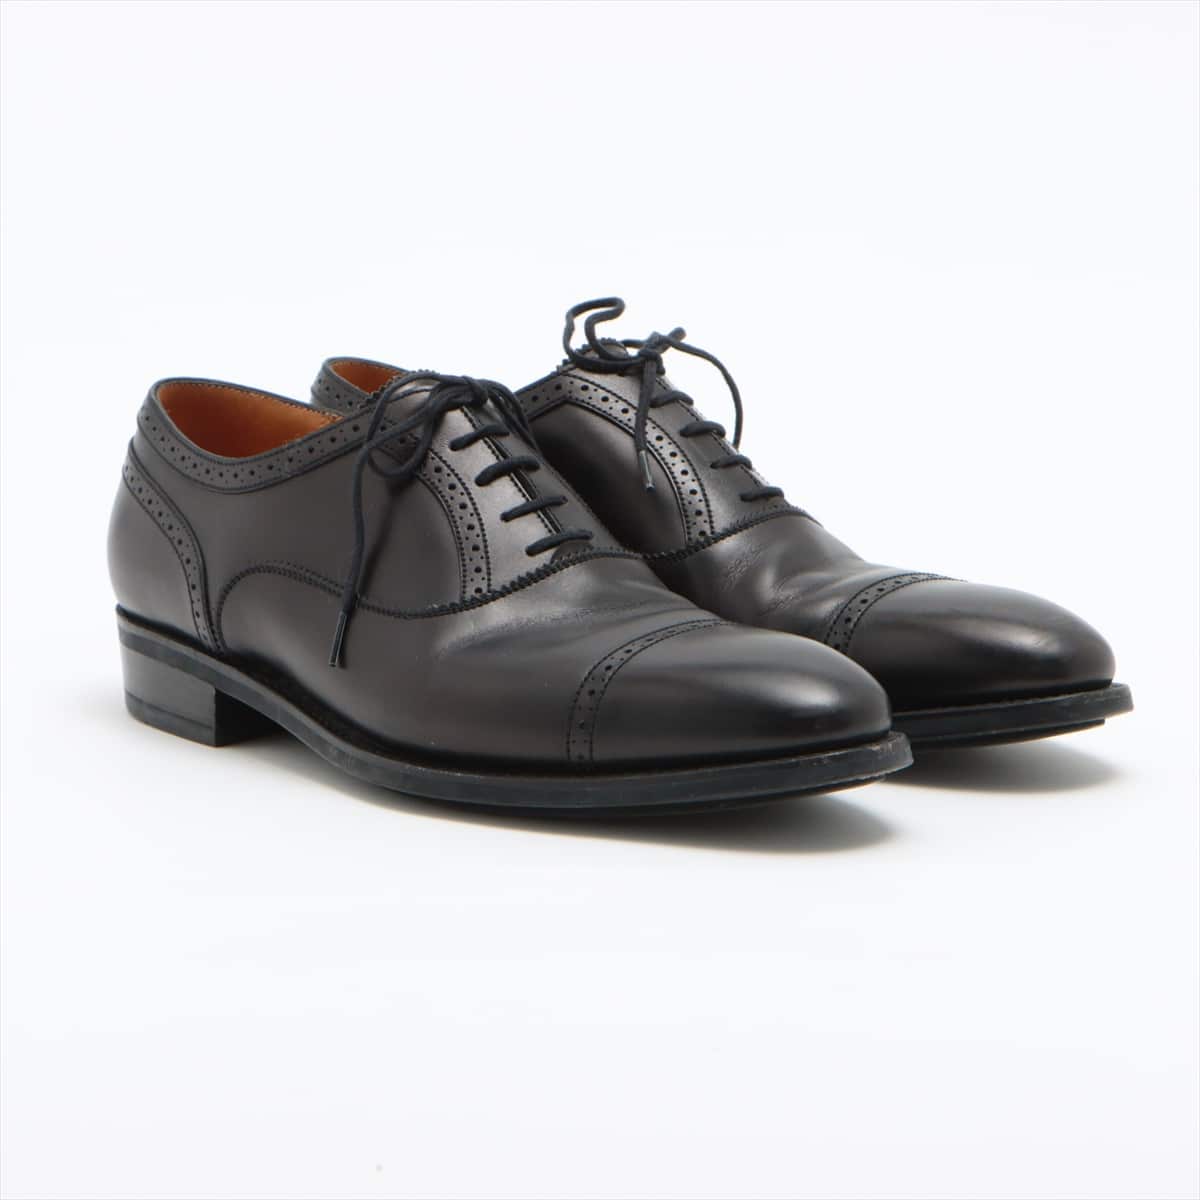 J. M. Weston Leather Leather shoes 6D Men's Black 478 punched cap toe